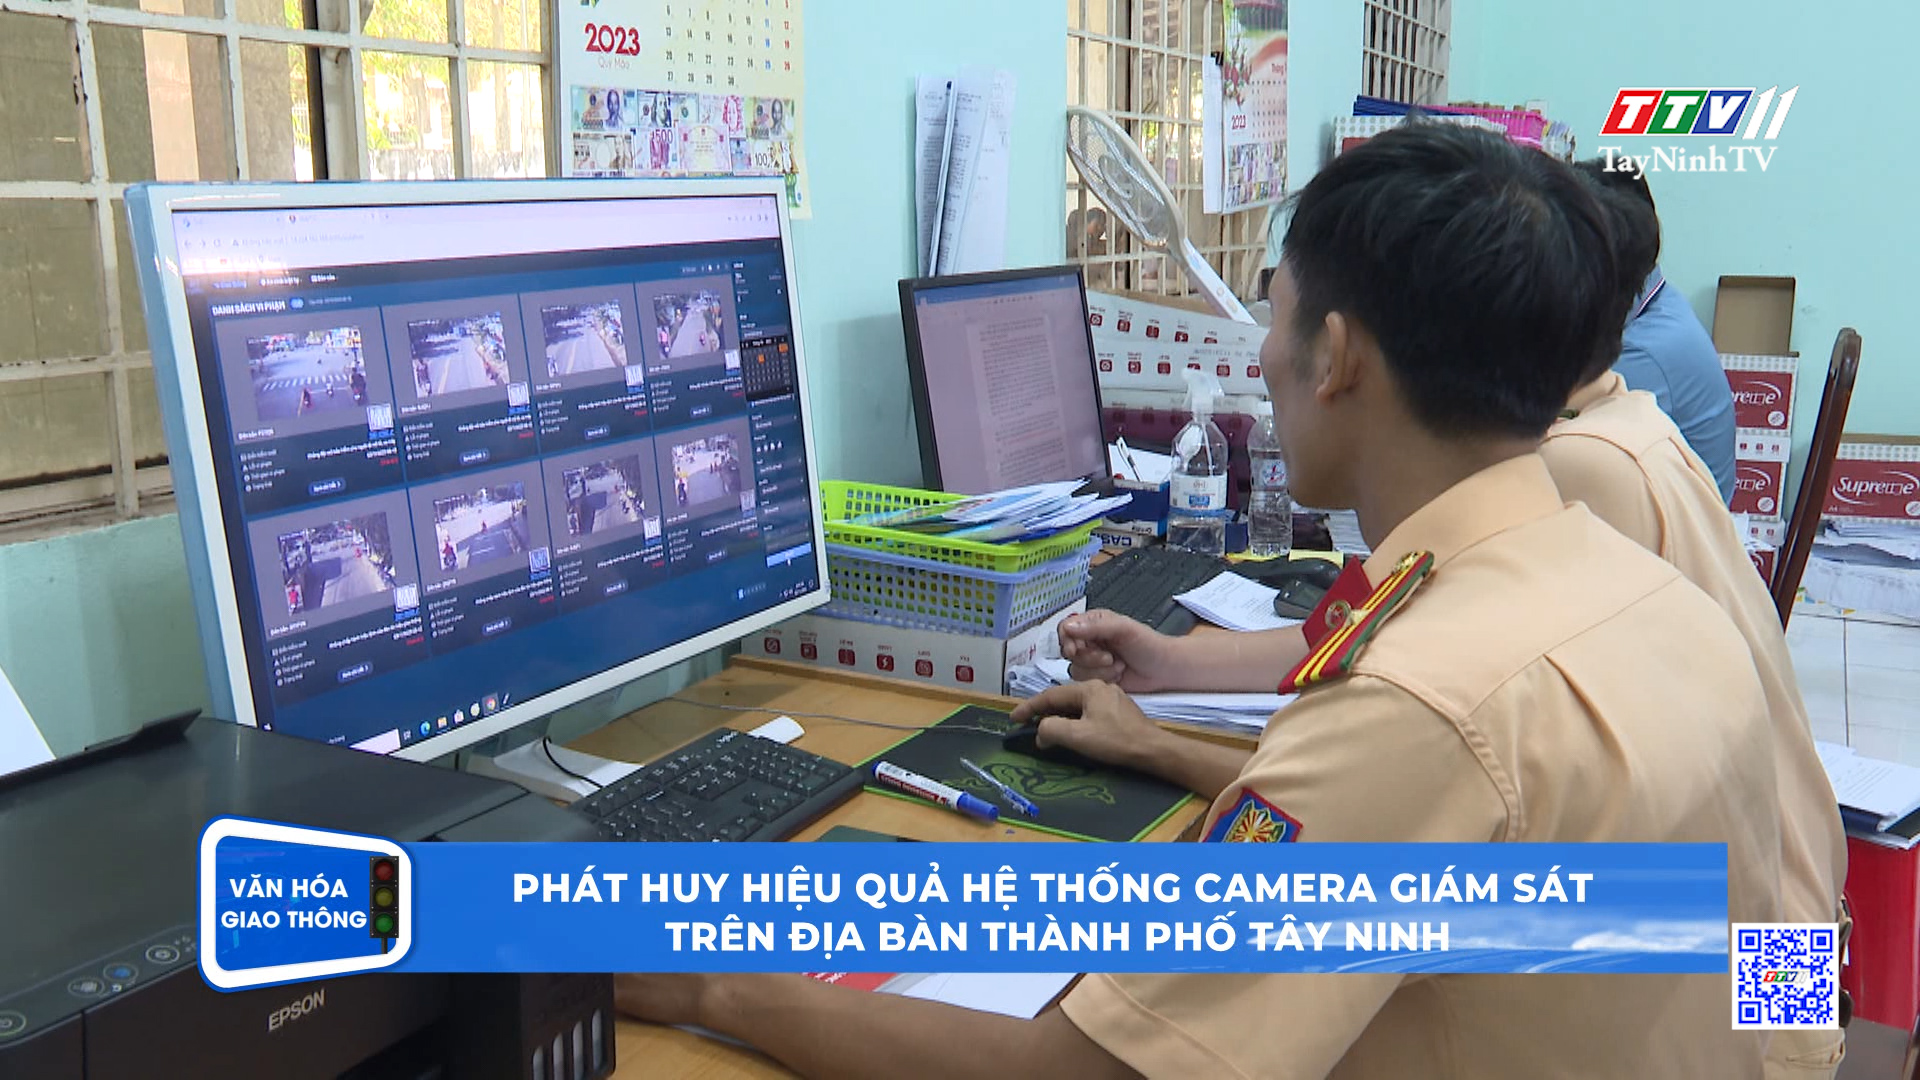 Phát huy hiệu quả hệ thống camera giám sát trên địa bàn thành phố Tây Ninh | Văn hóa giao thông | TayNinhTV